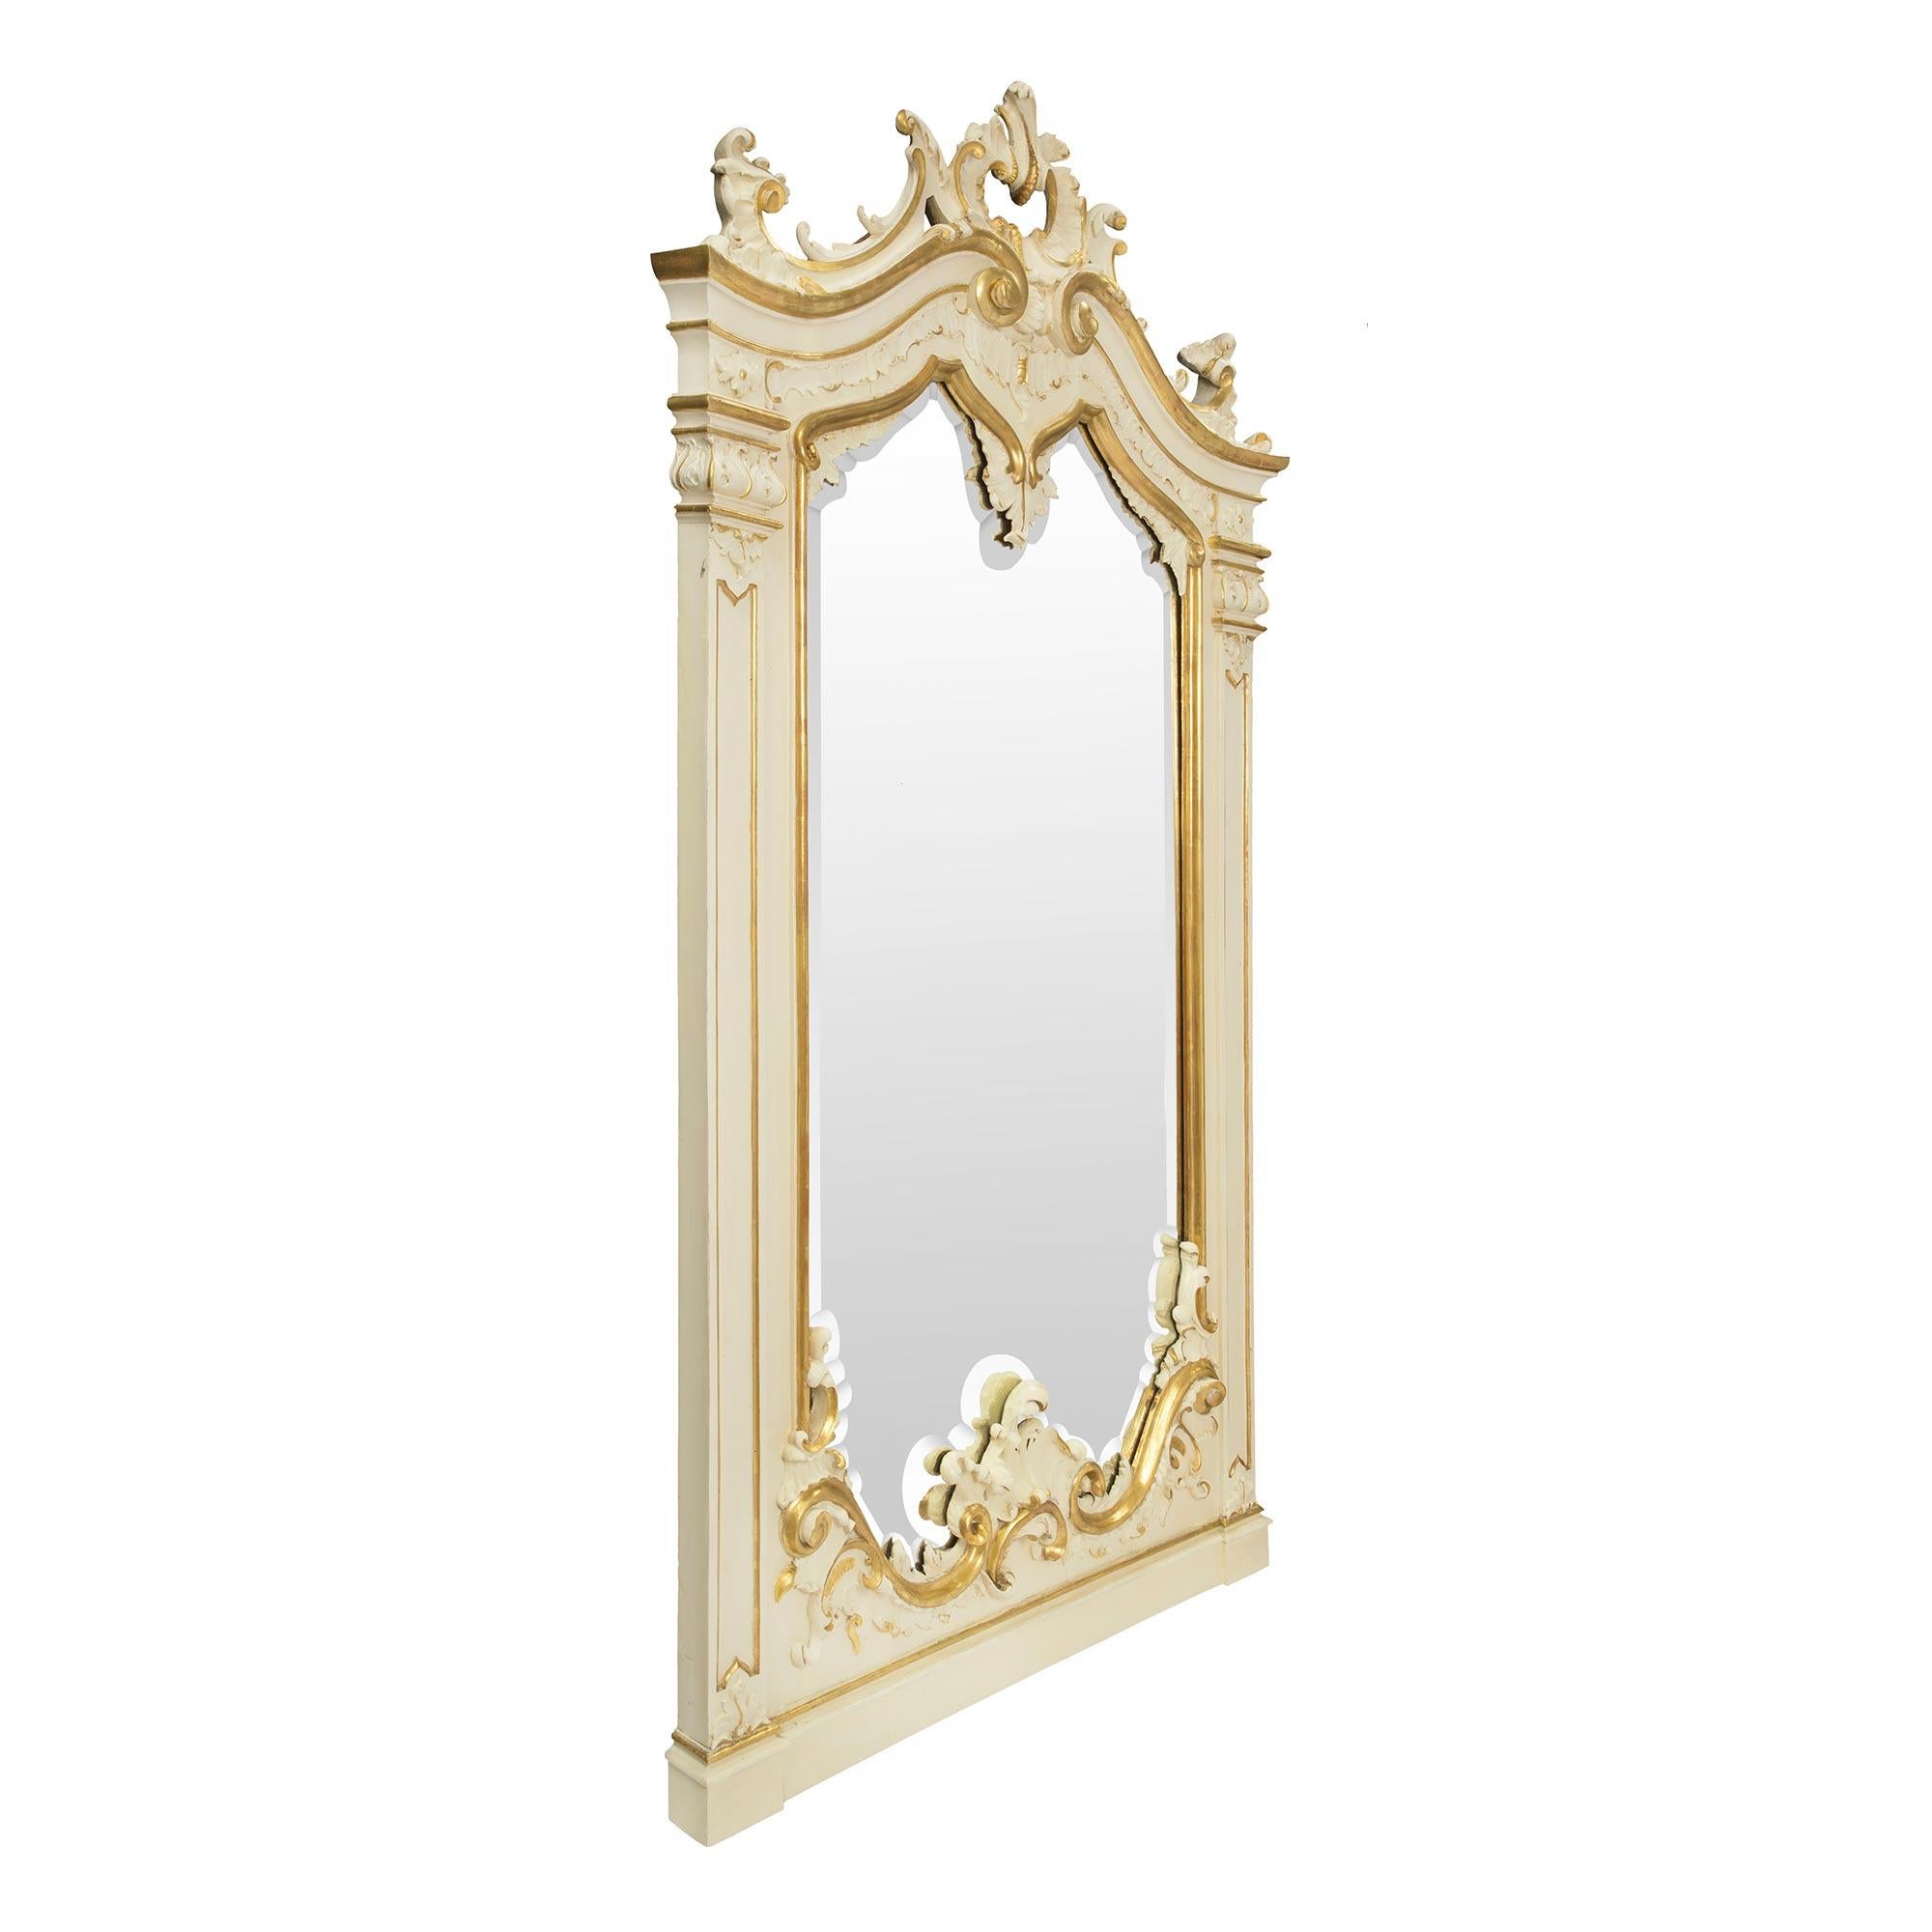 Un sensationnel et unique miroir vénitien patiné et doré italien du 19ème siècle. Le miroir présente une bande inférieure mouchetée avec une impressionnante gerbe de feuillages sculptés parmi des rinceaux en 'S' et 'C' dorés. Les deux panneaux